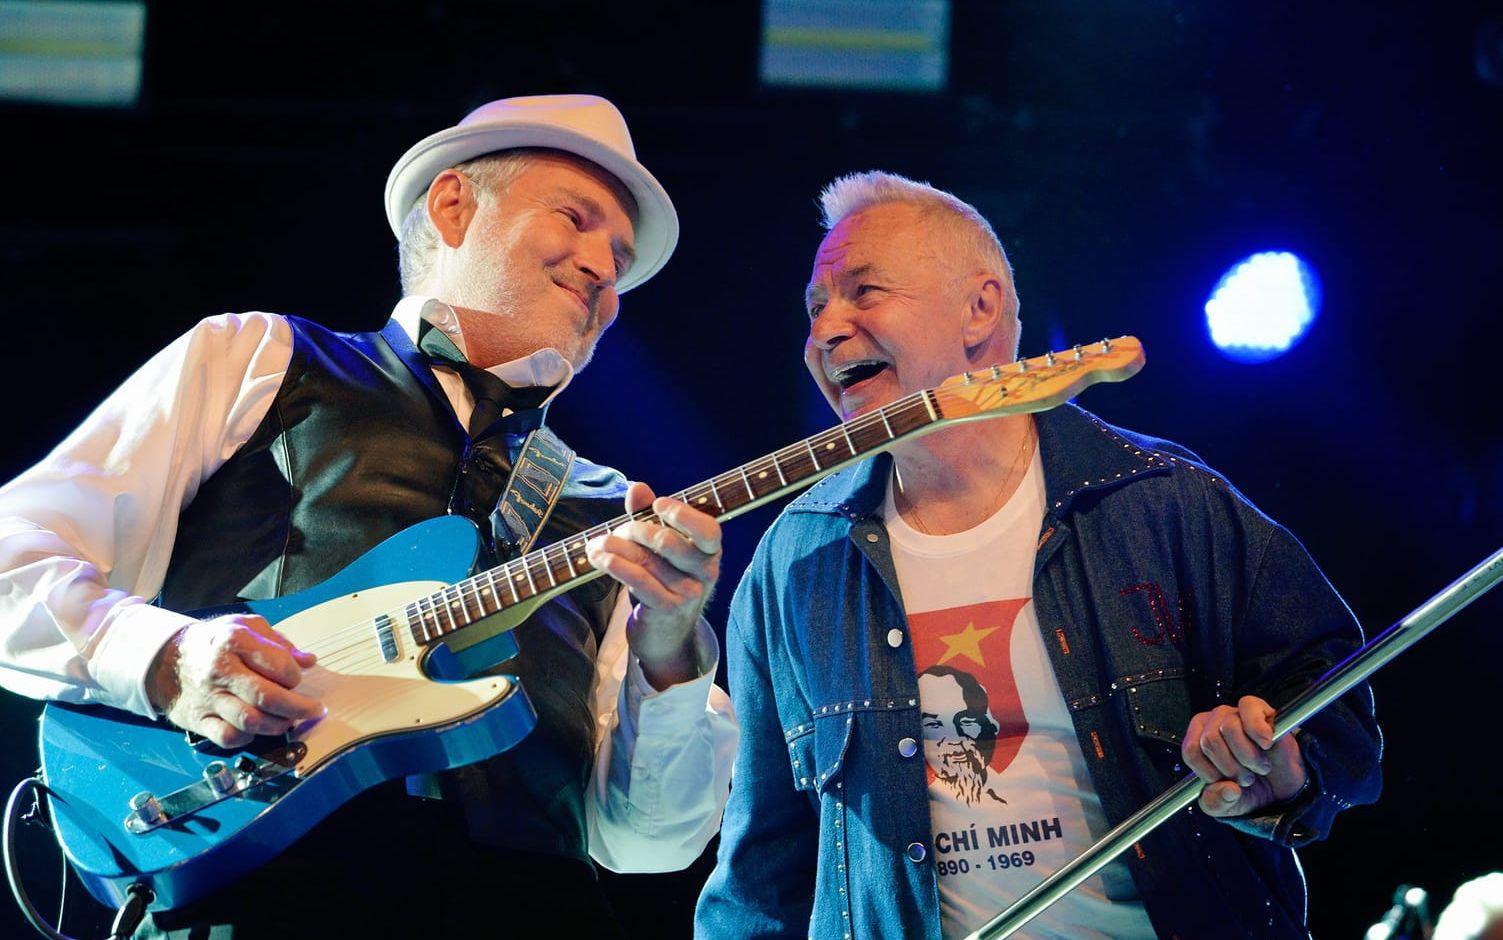 Jerry Williams rockar på vid 74 års ålder, här med gitarristen Staffan Astner. Bild: Edith Camilla Svensson